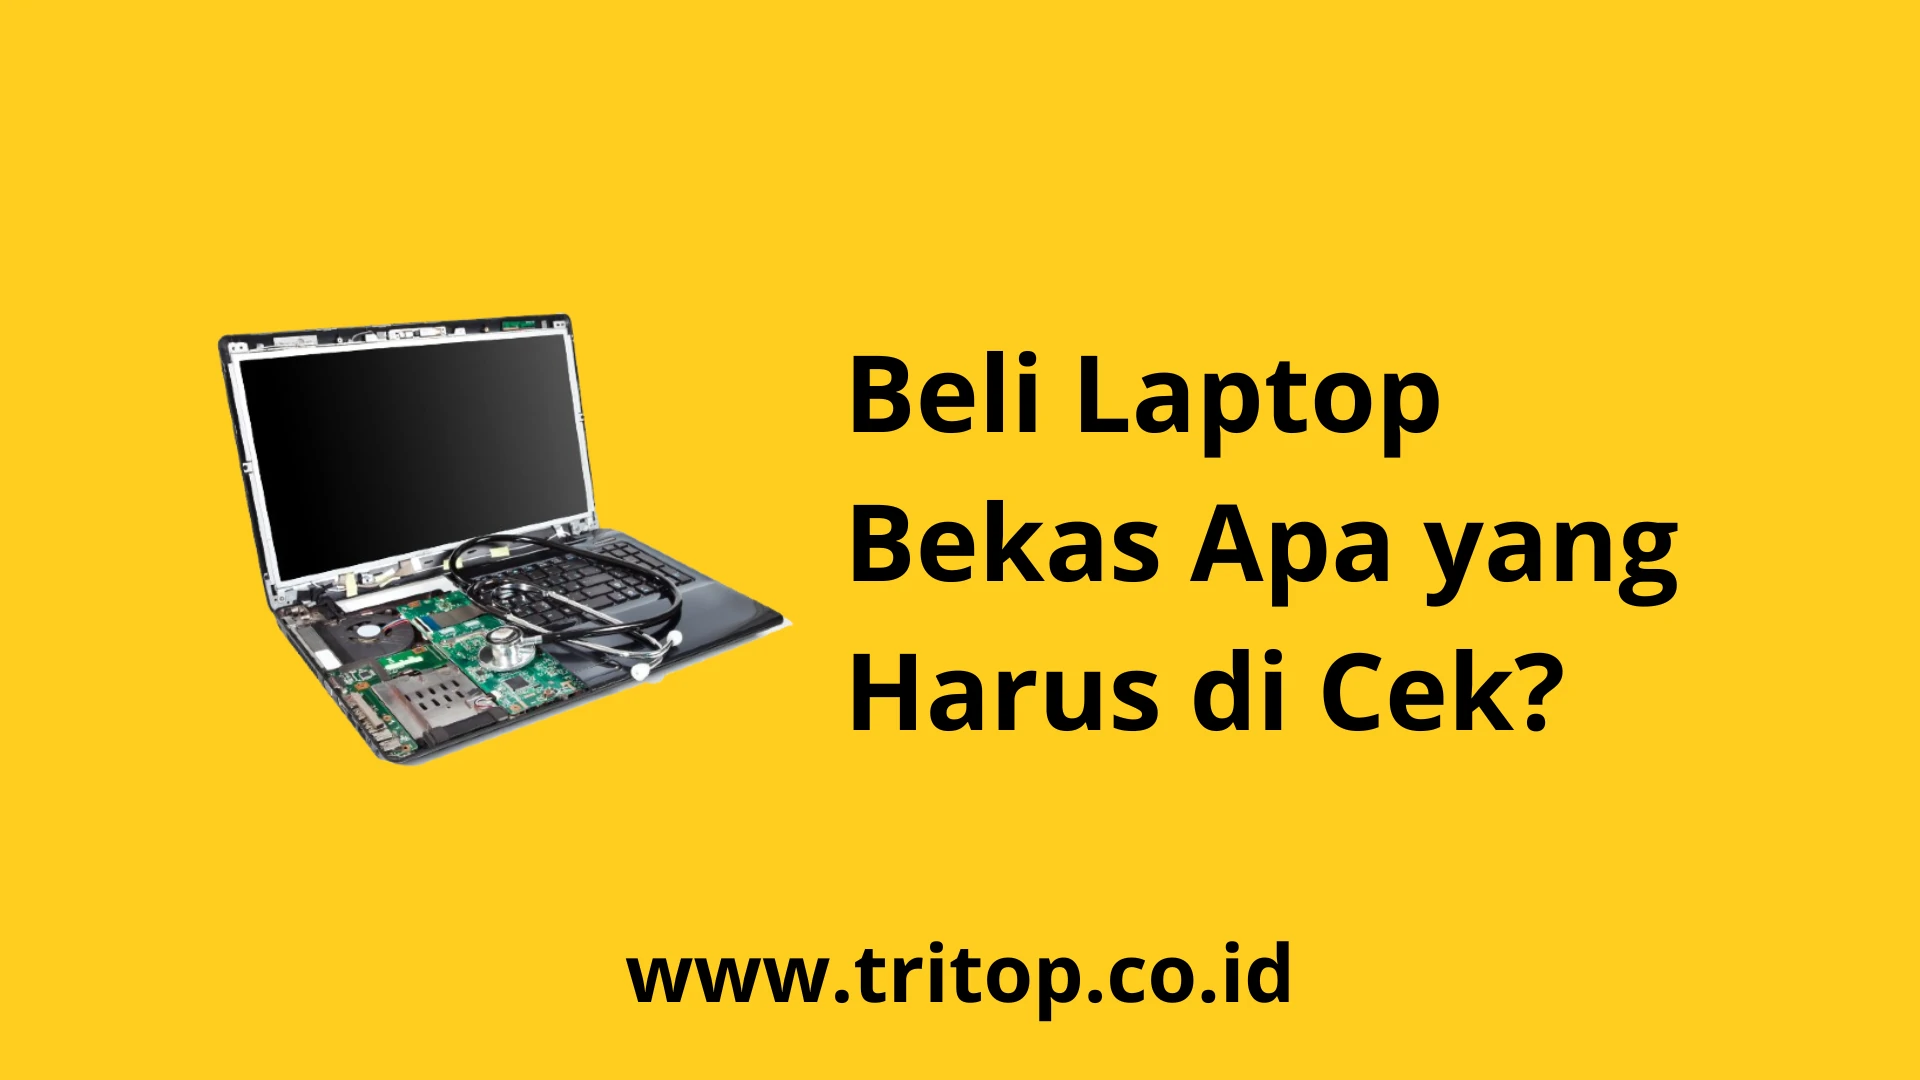 Beli Laptop Bekas Apa yang Harus di Cek www.tritop.co.id